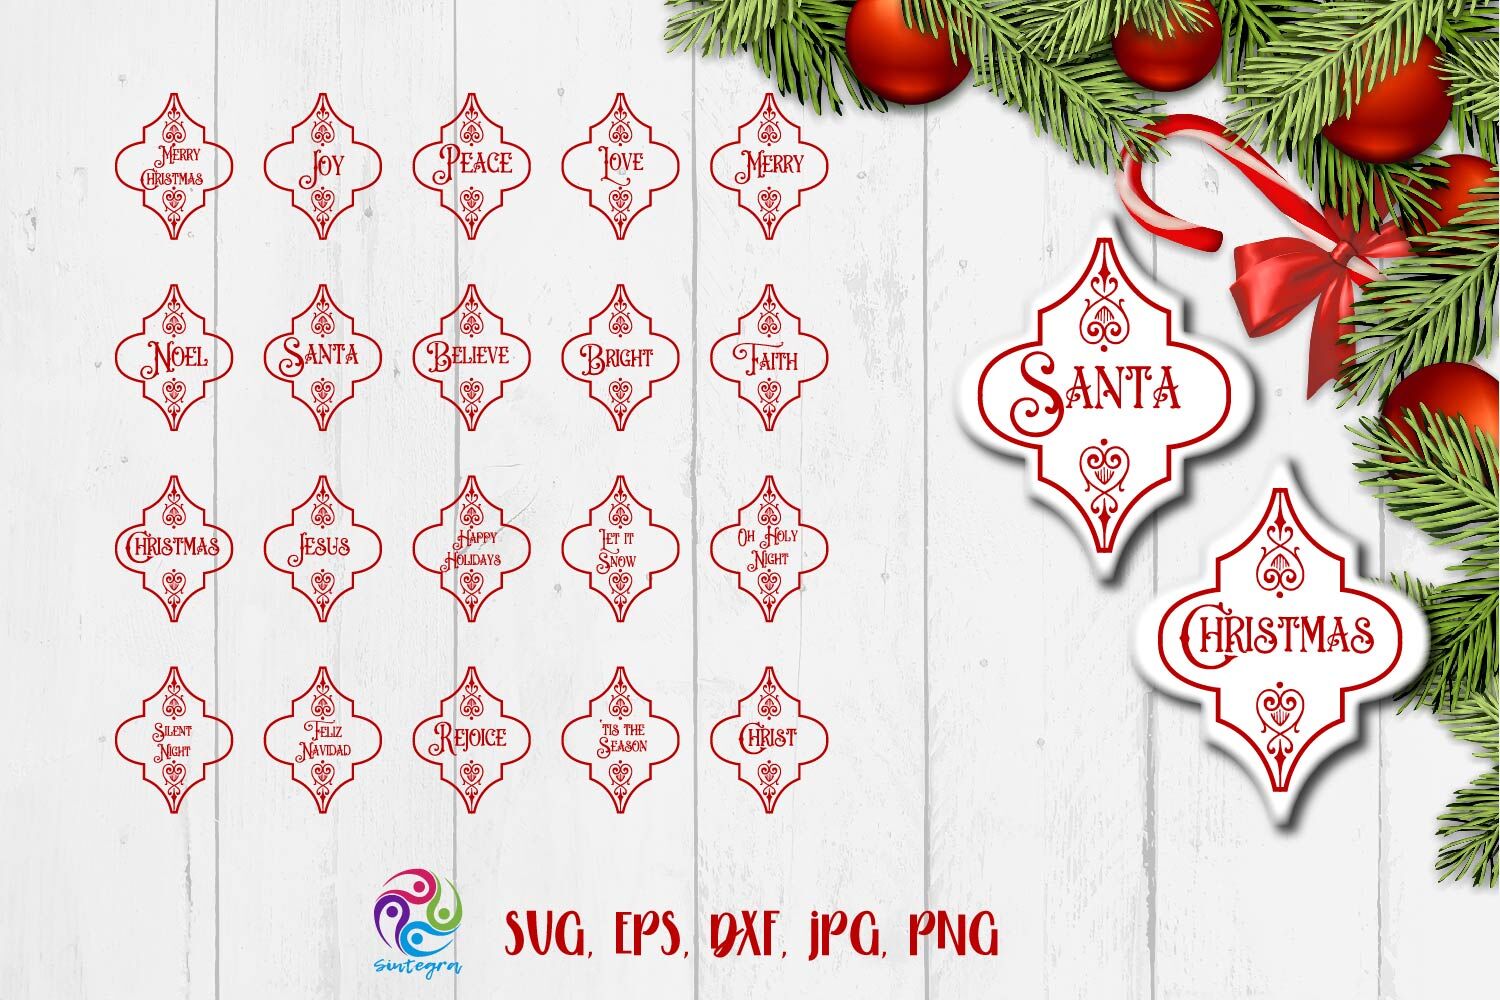 Download Christmas Arabesque Ornament Tile Bundle Svg By Sintegra ...